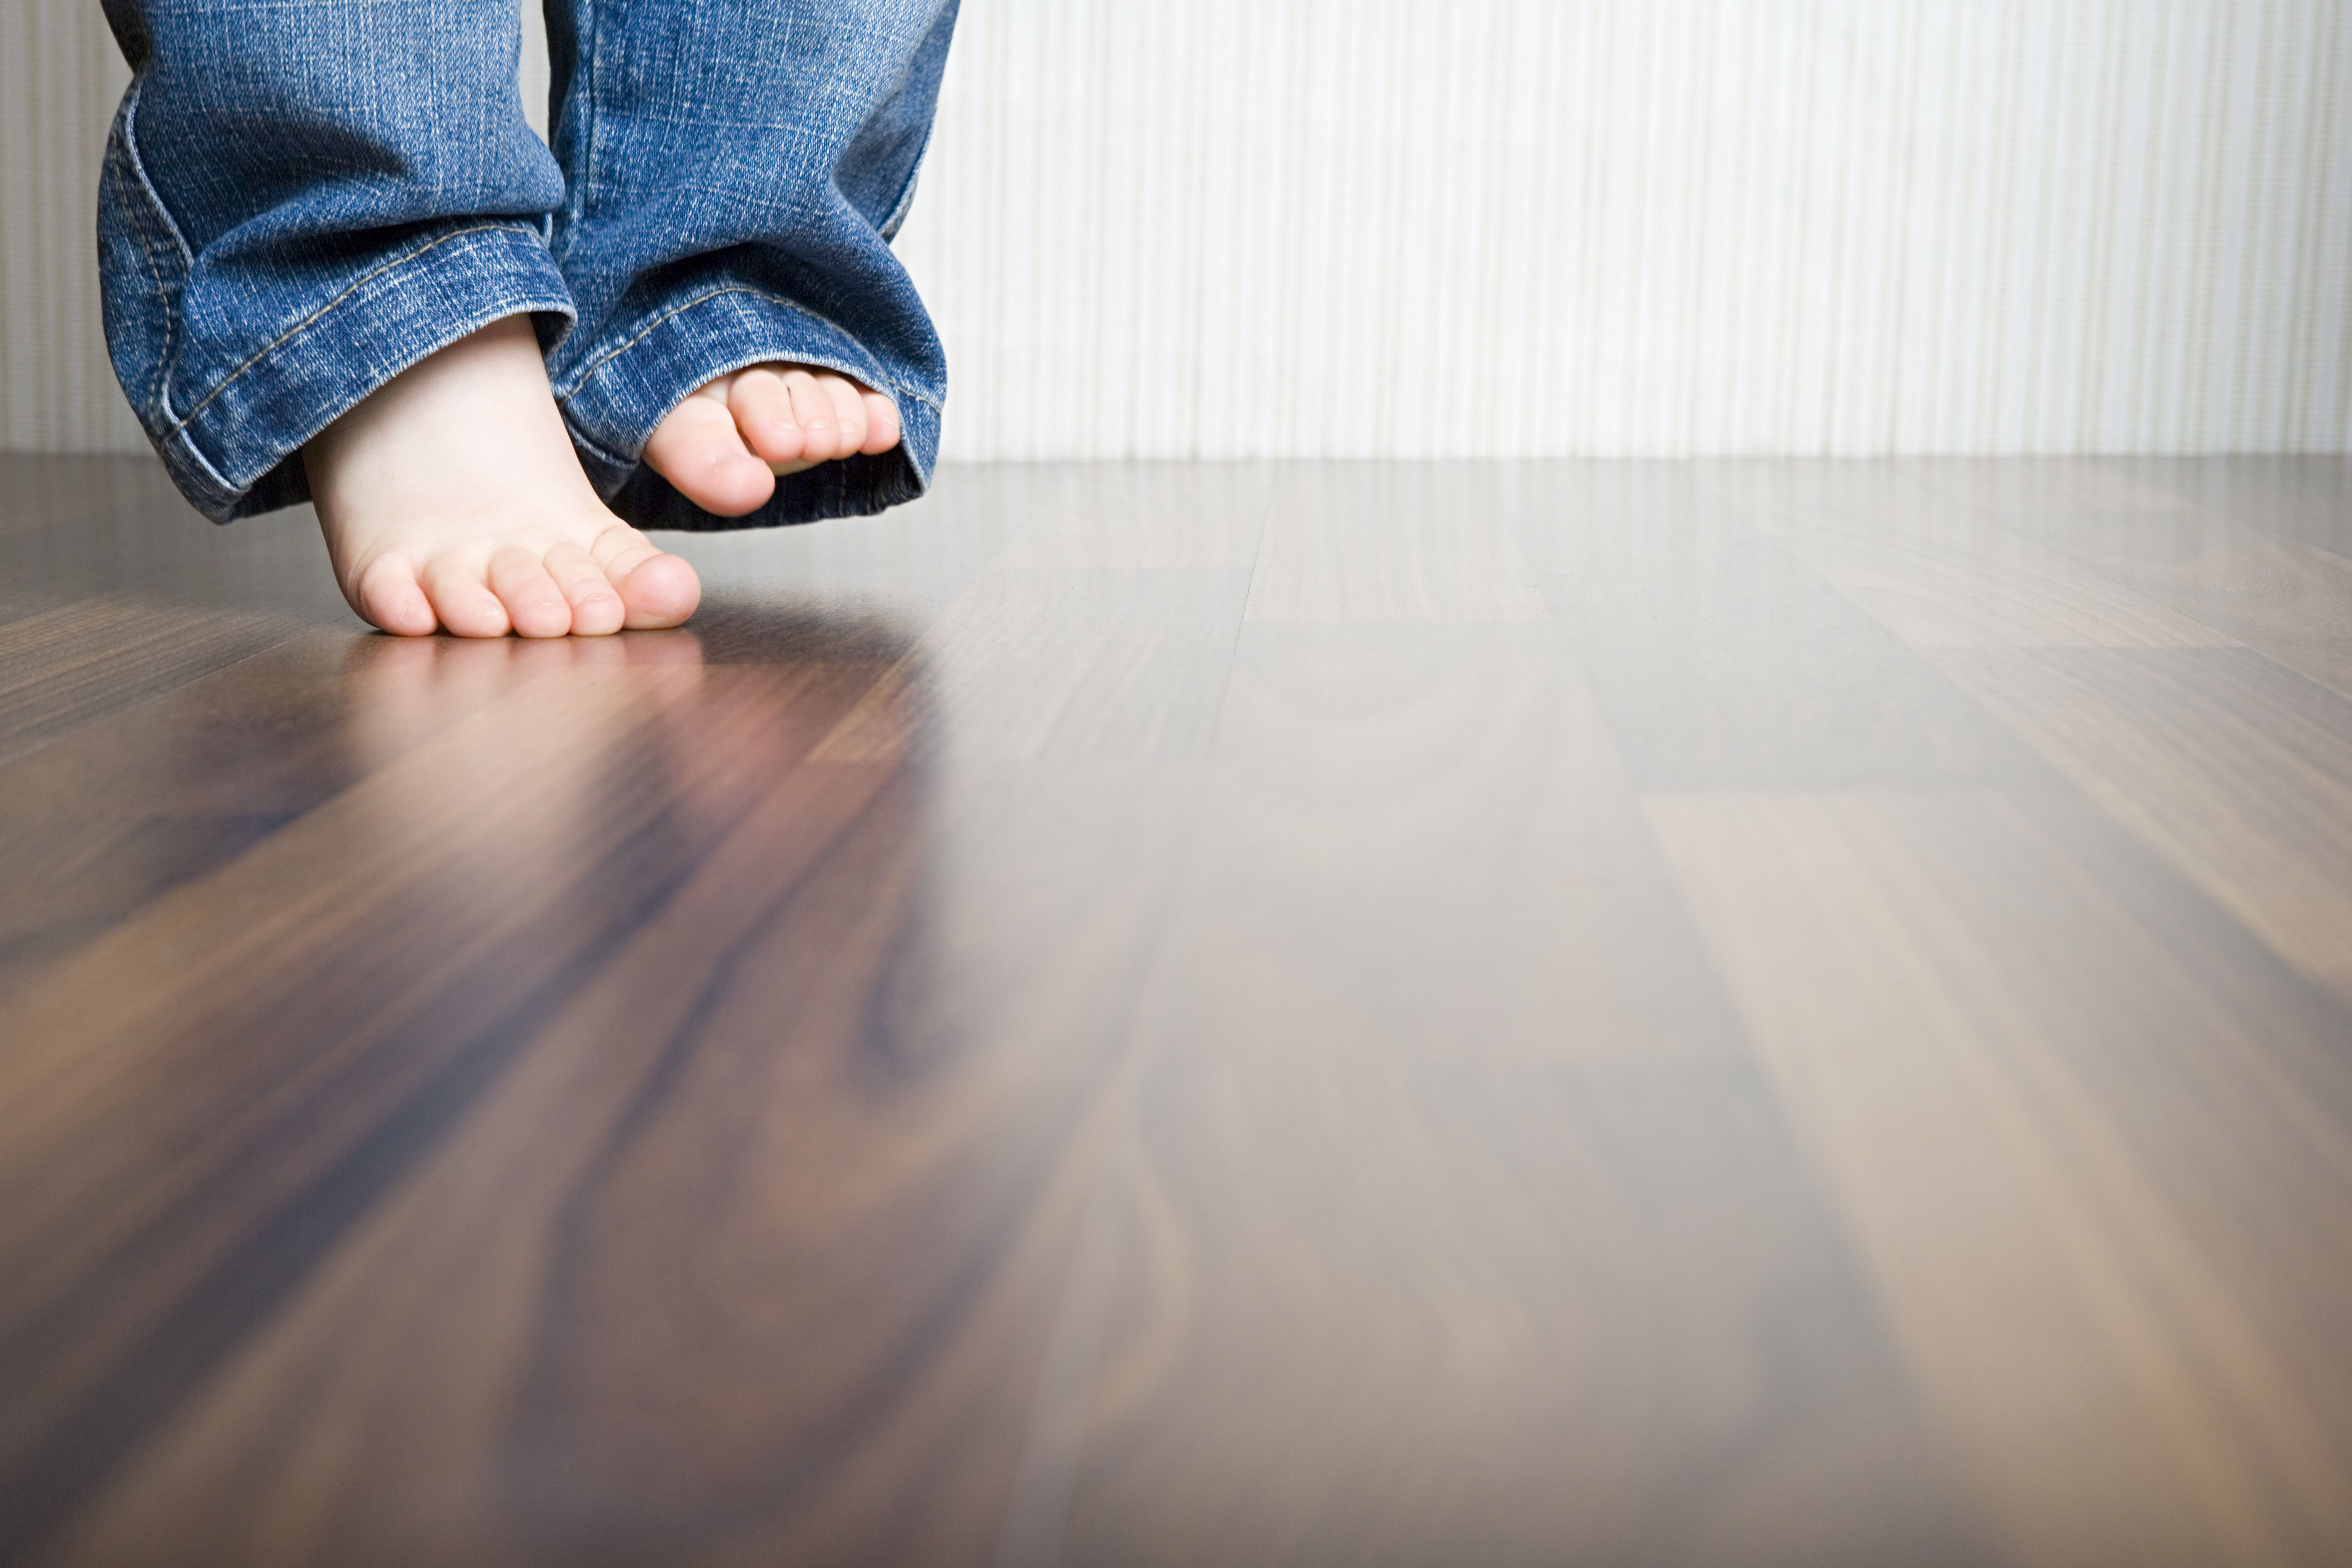 steam cleaners for hardwood floors ratings of how to clean hardwood floors best way to clean wood flooring regarding 1512149908 gettyimages 75403973